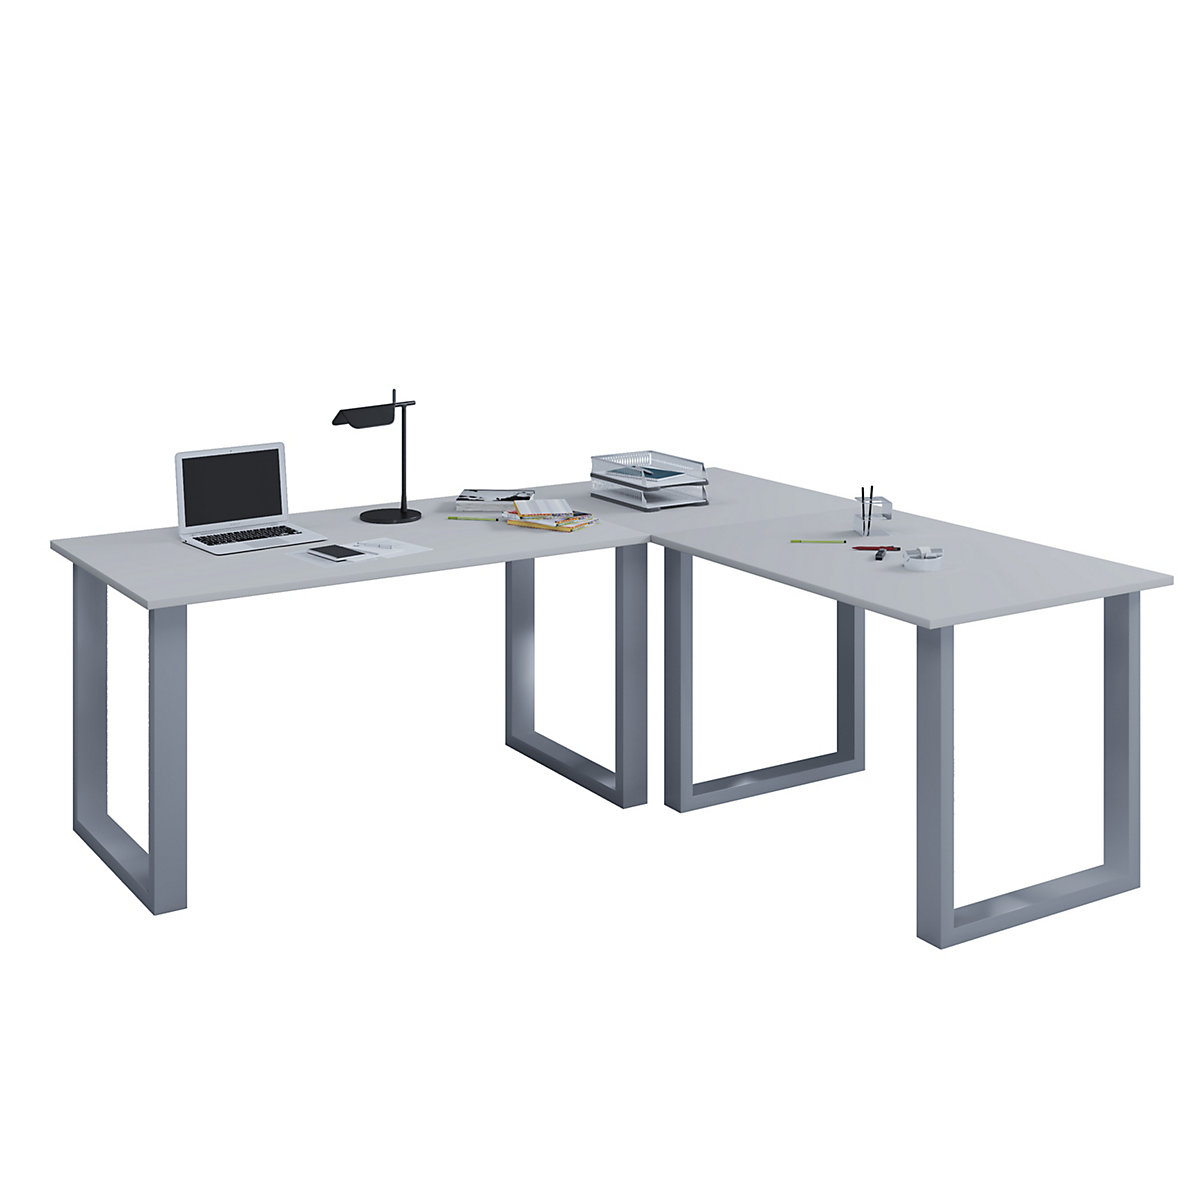 VCM Eckschreibtisch Schreibtisch Büromöbel Computertisch Winkeltisch Tisch Büro Lona 190 x 190 x 80 cm